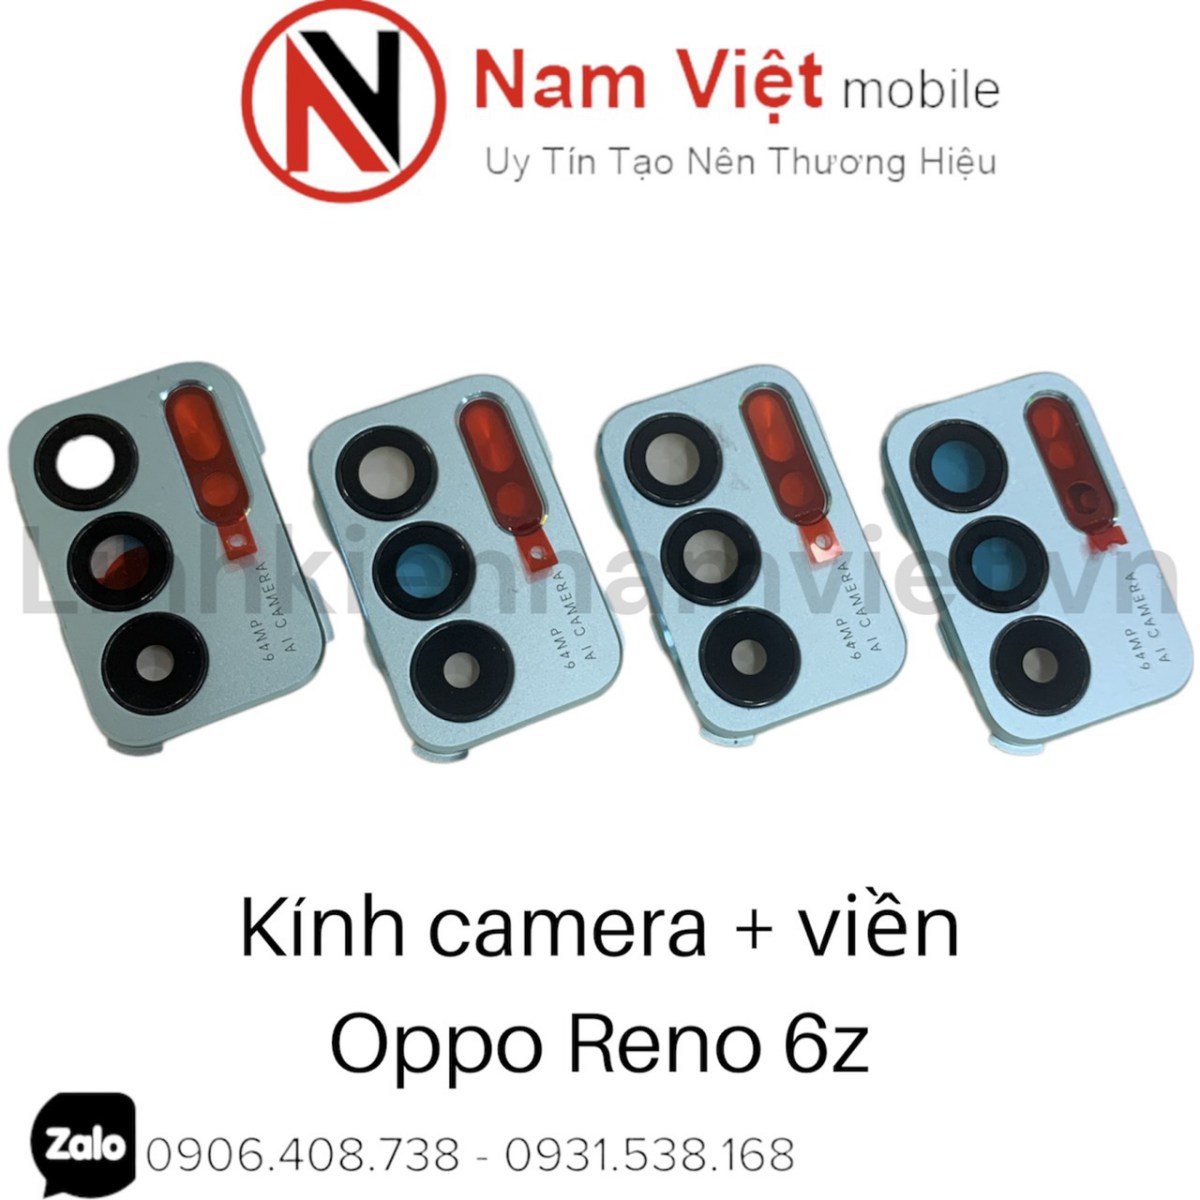 Kính camera + viền Oppo Reno 6Z